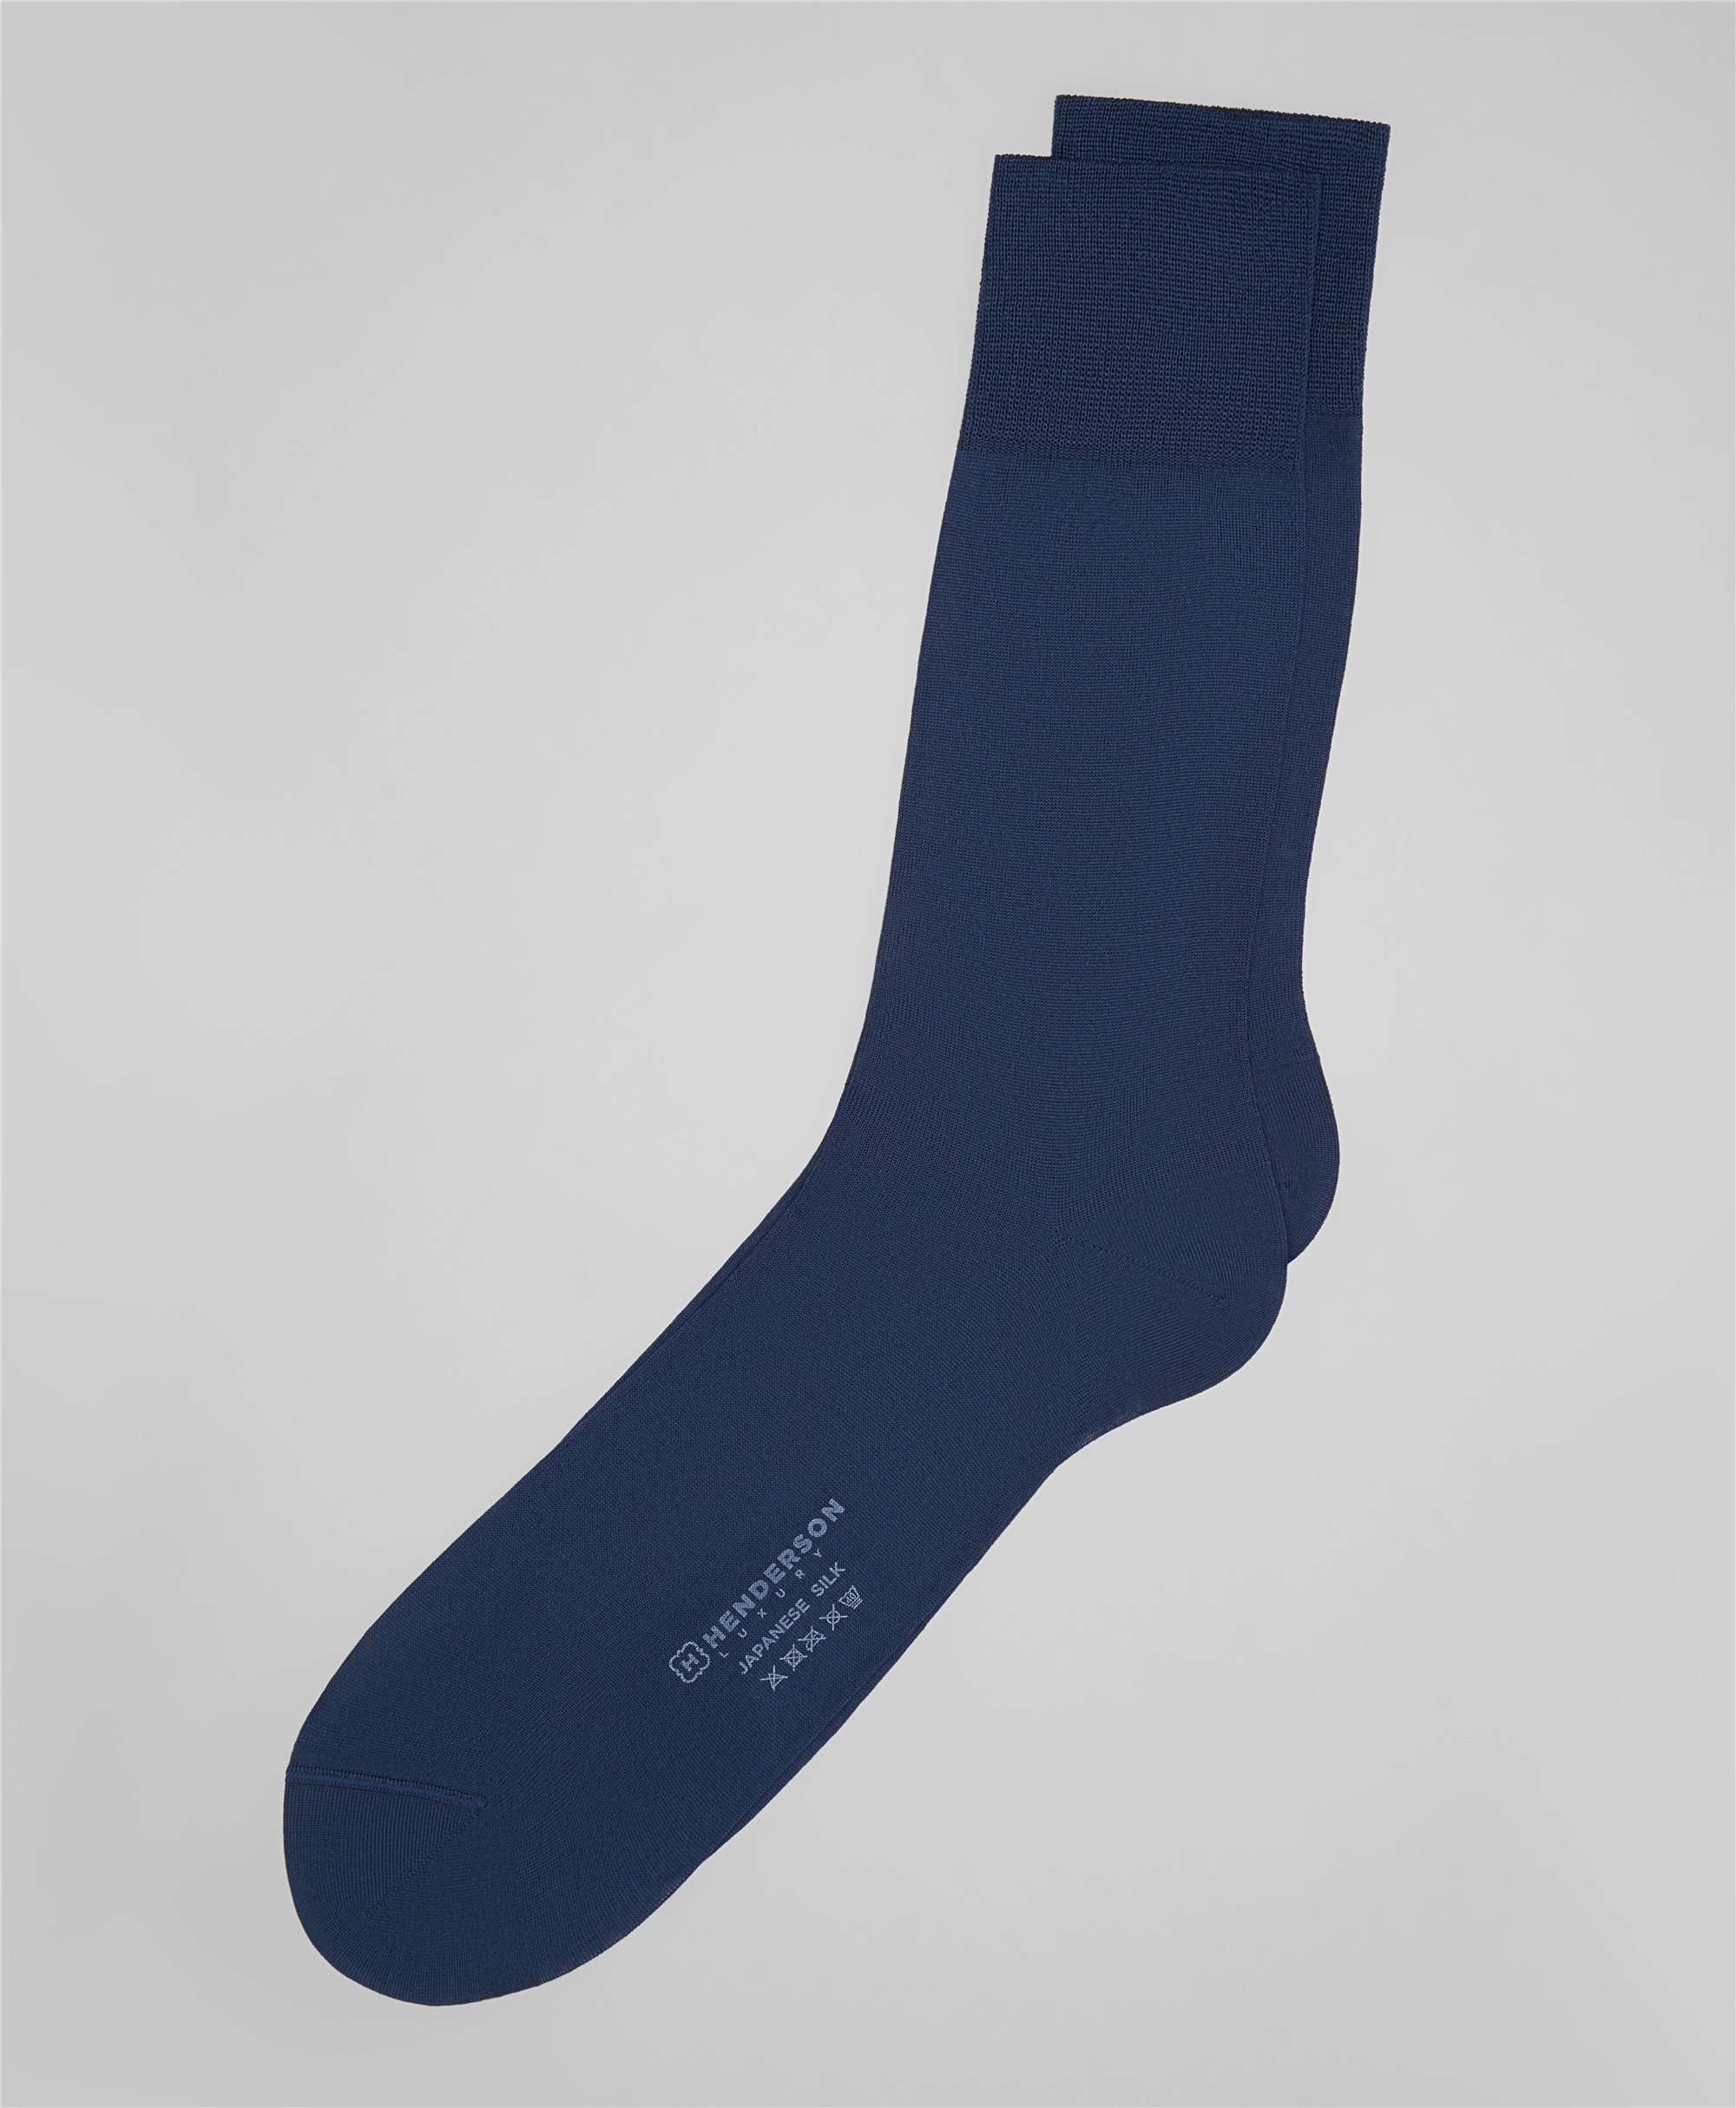 Носки классические из 100% японского шелка в синем цвете SK-0278 NAVY-купить в HENDERSON.RU, цена 2 199 ₽